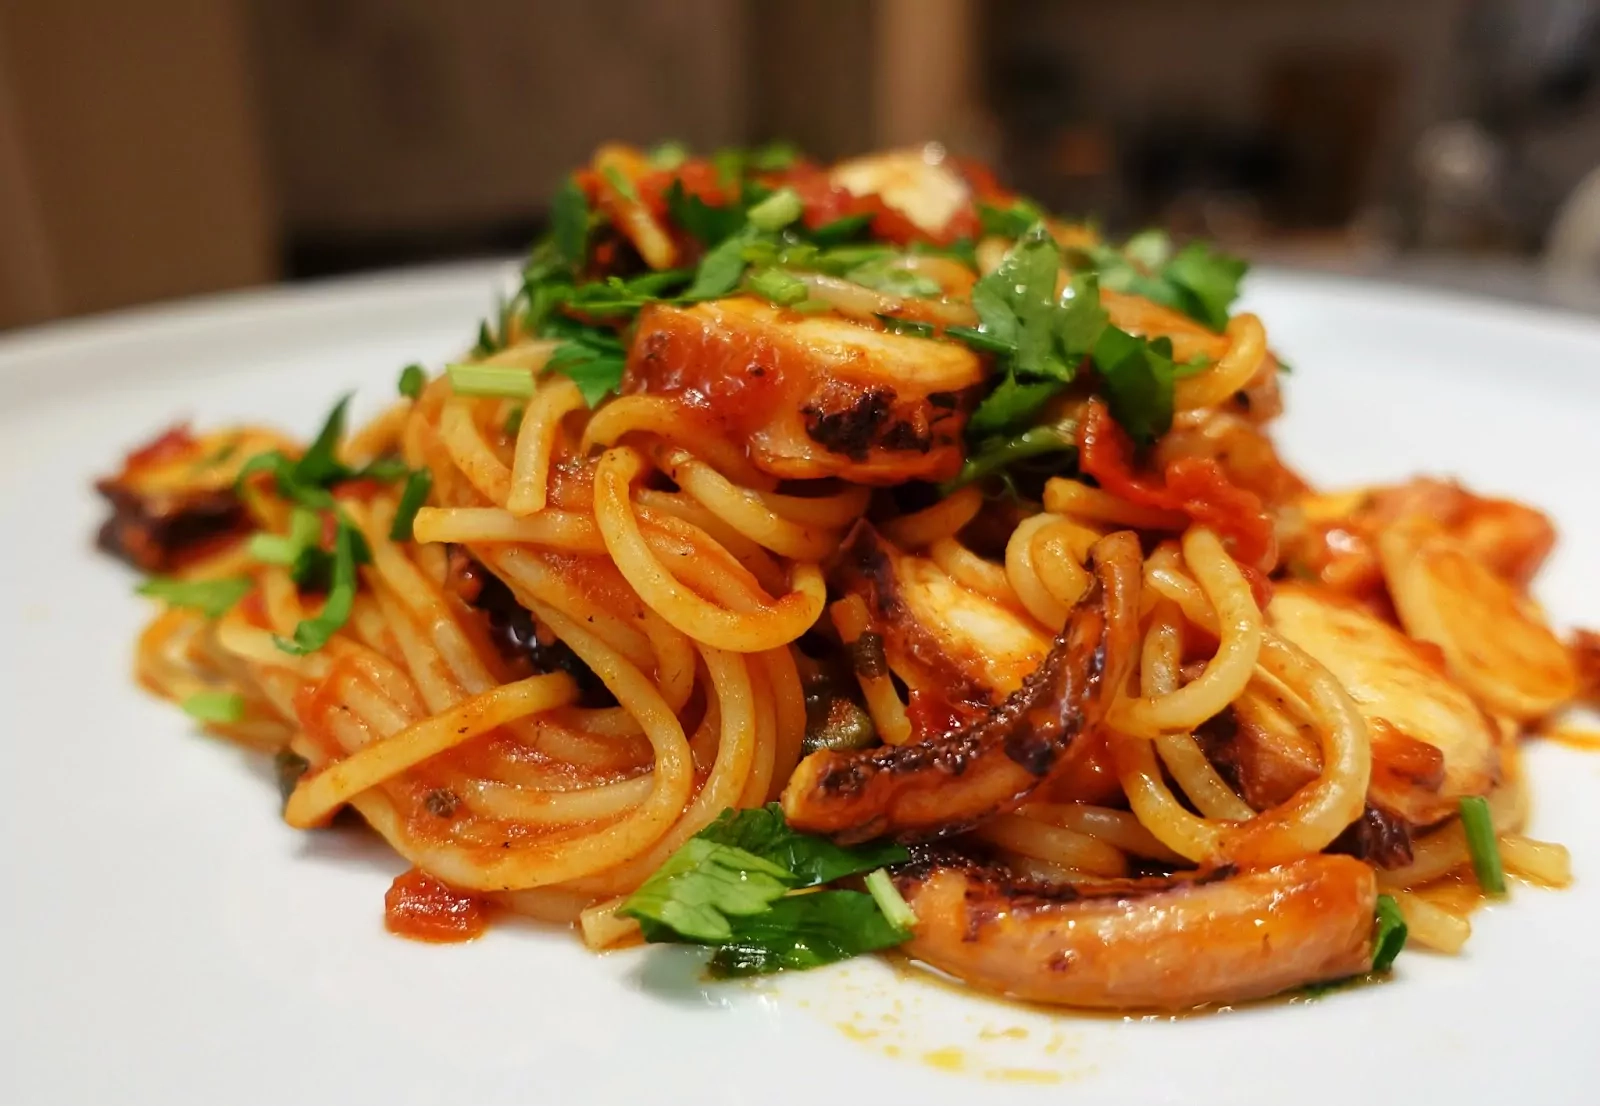 Спагетти - паста с щупальцами кальмаров и анчоусами